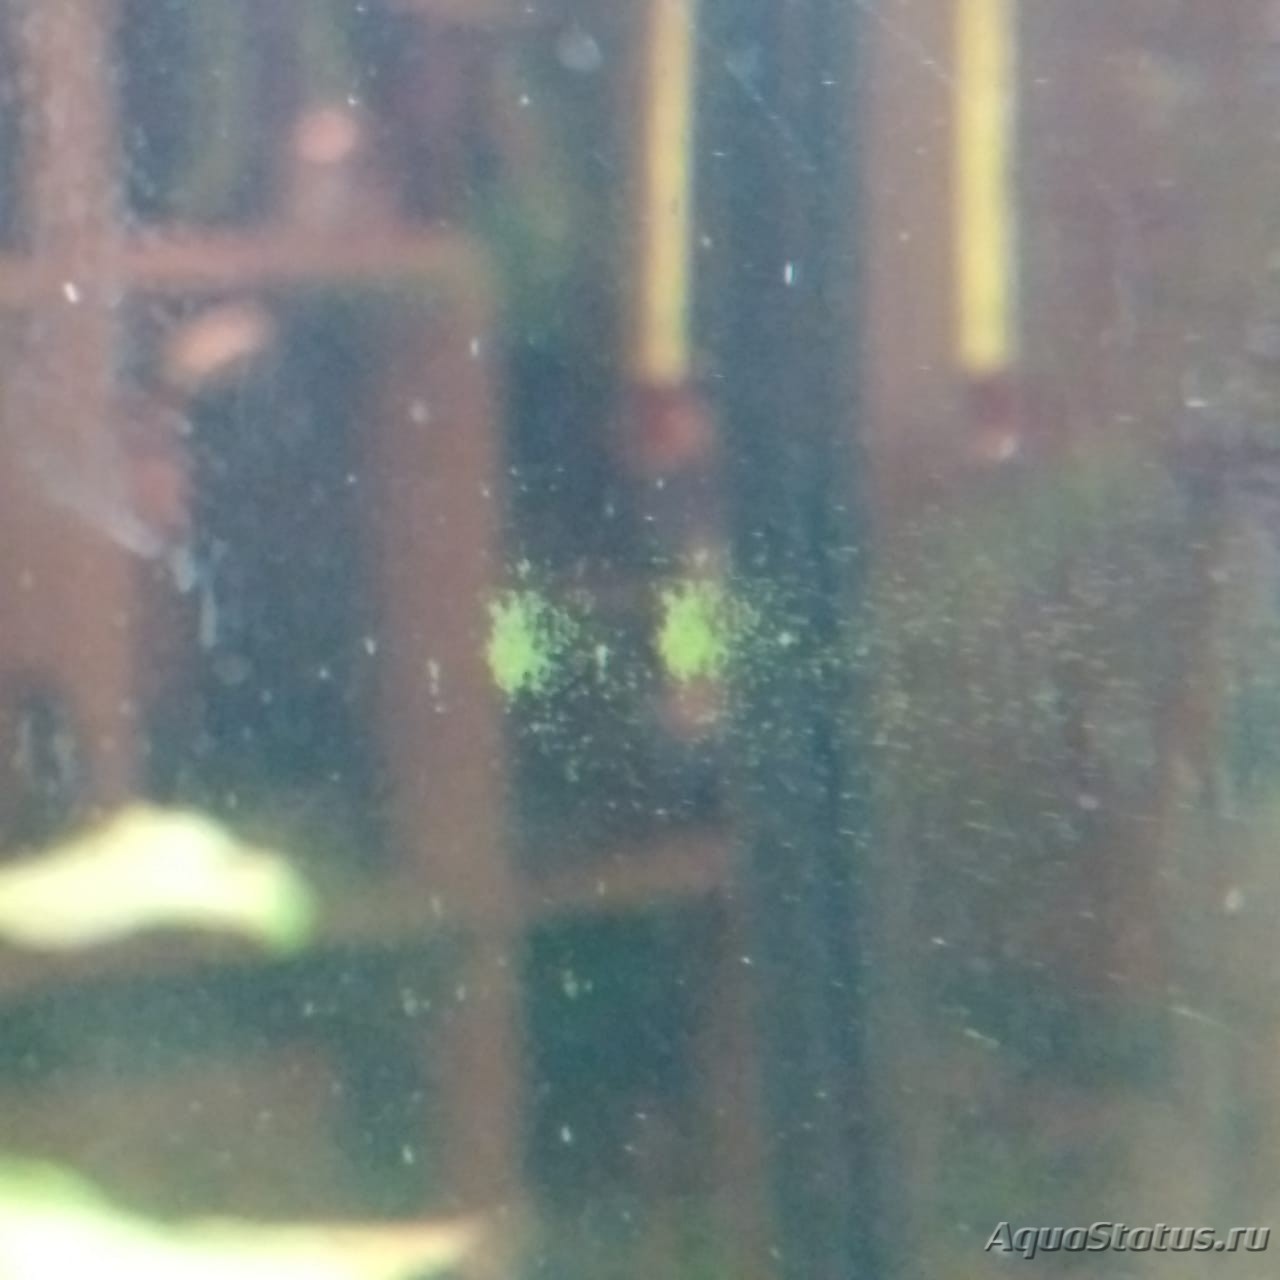 Маленькие зеленые точки на стенках аквариума